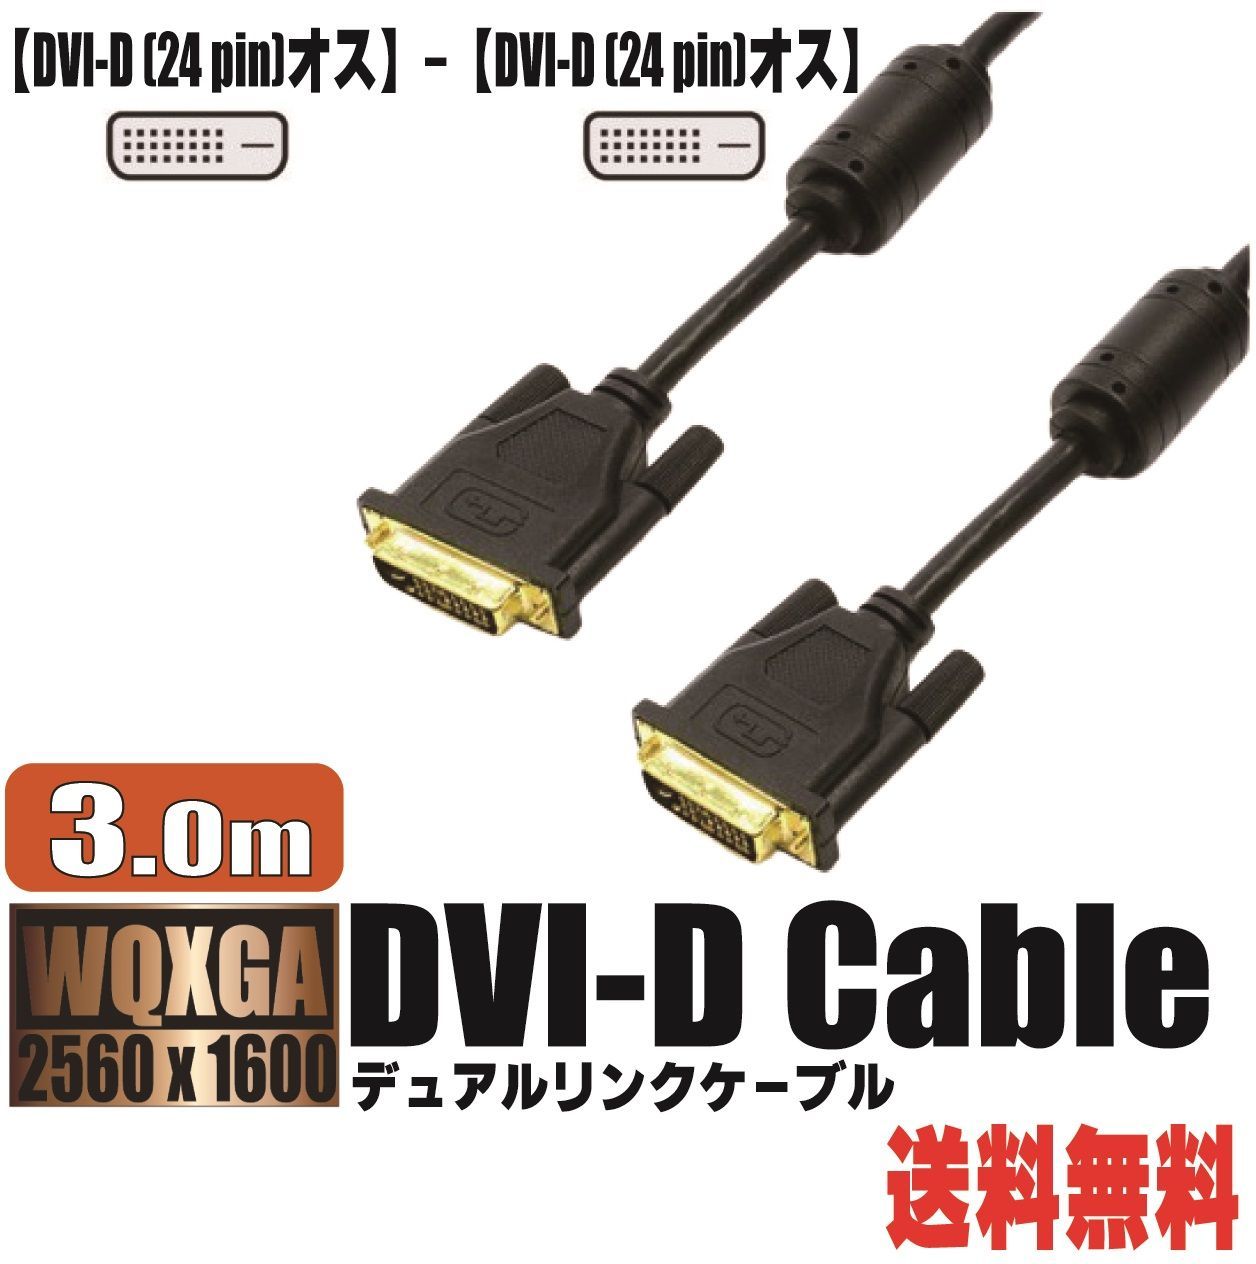 Cable Matters USB HDMI 変換アダプター USB 3.0 HDMI 変換 HDMI-DVI